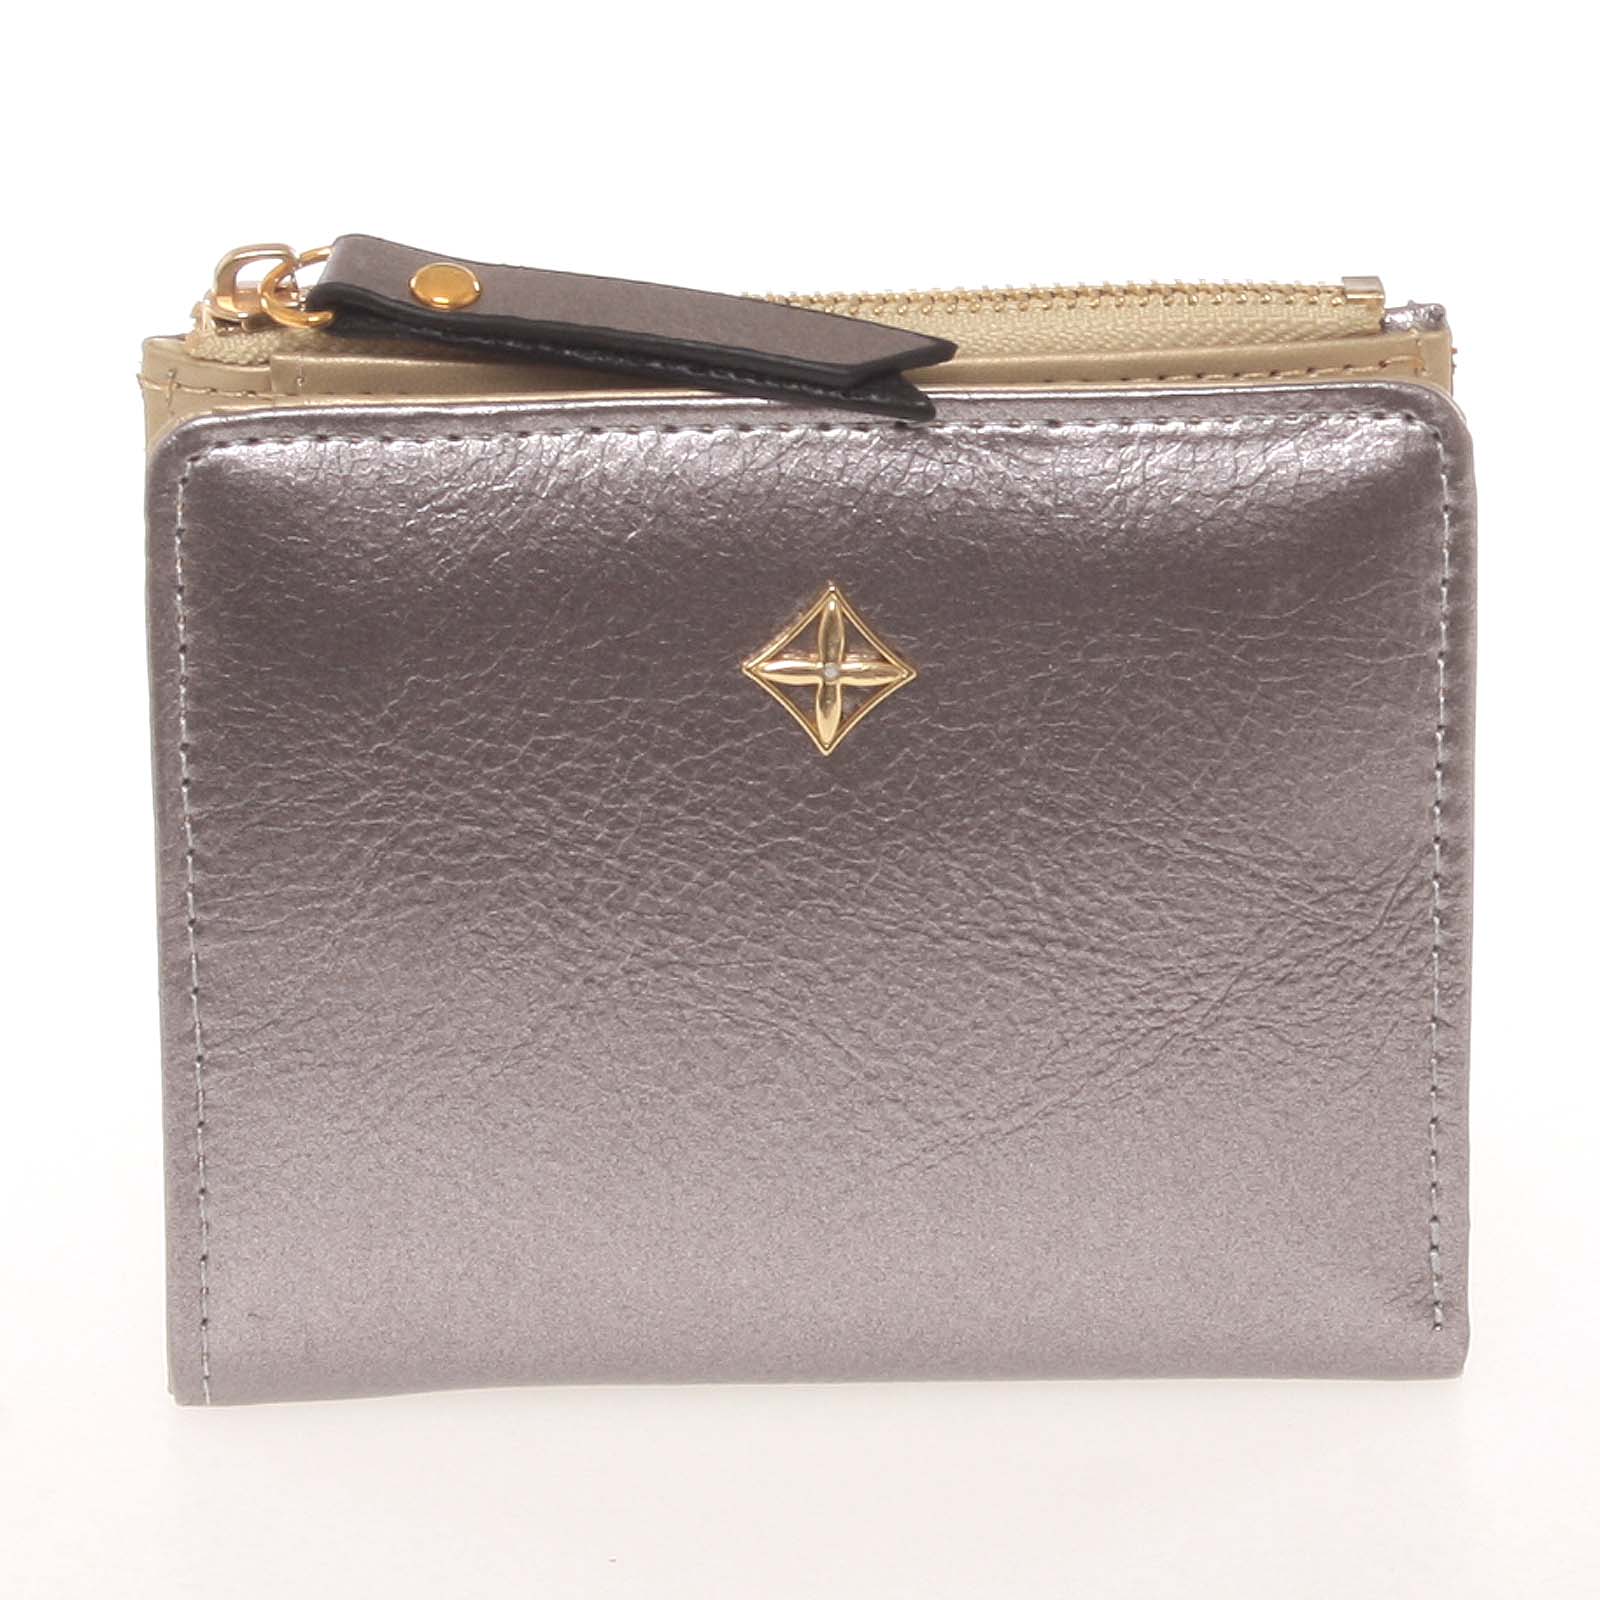 Jednoduchá malá dámska strieborná peňaženka - Milano Design SF1806